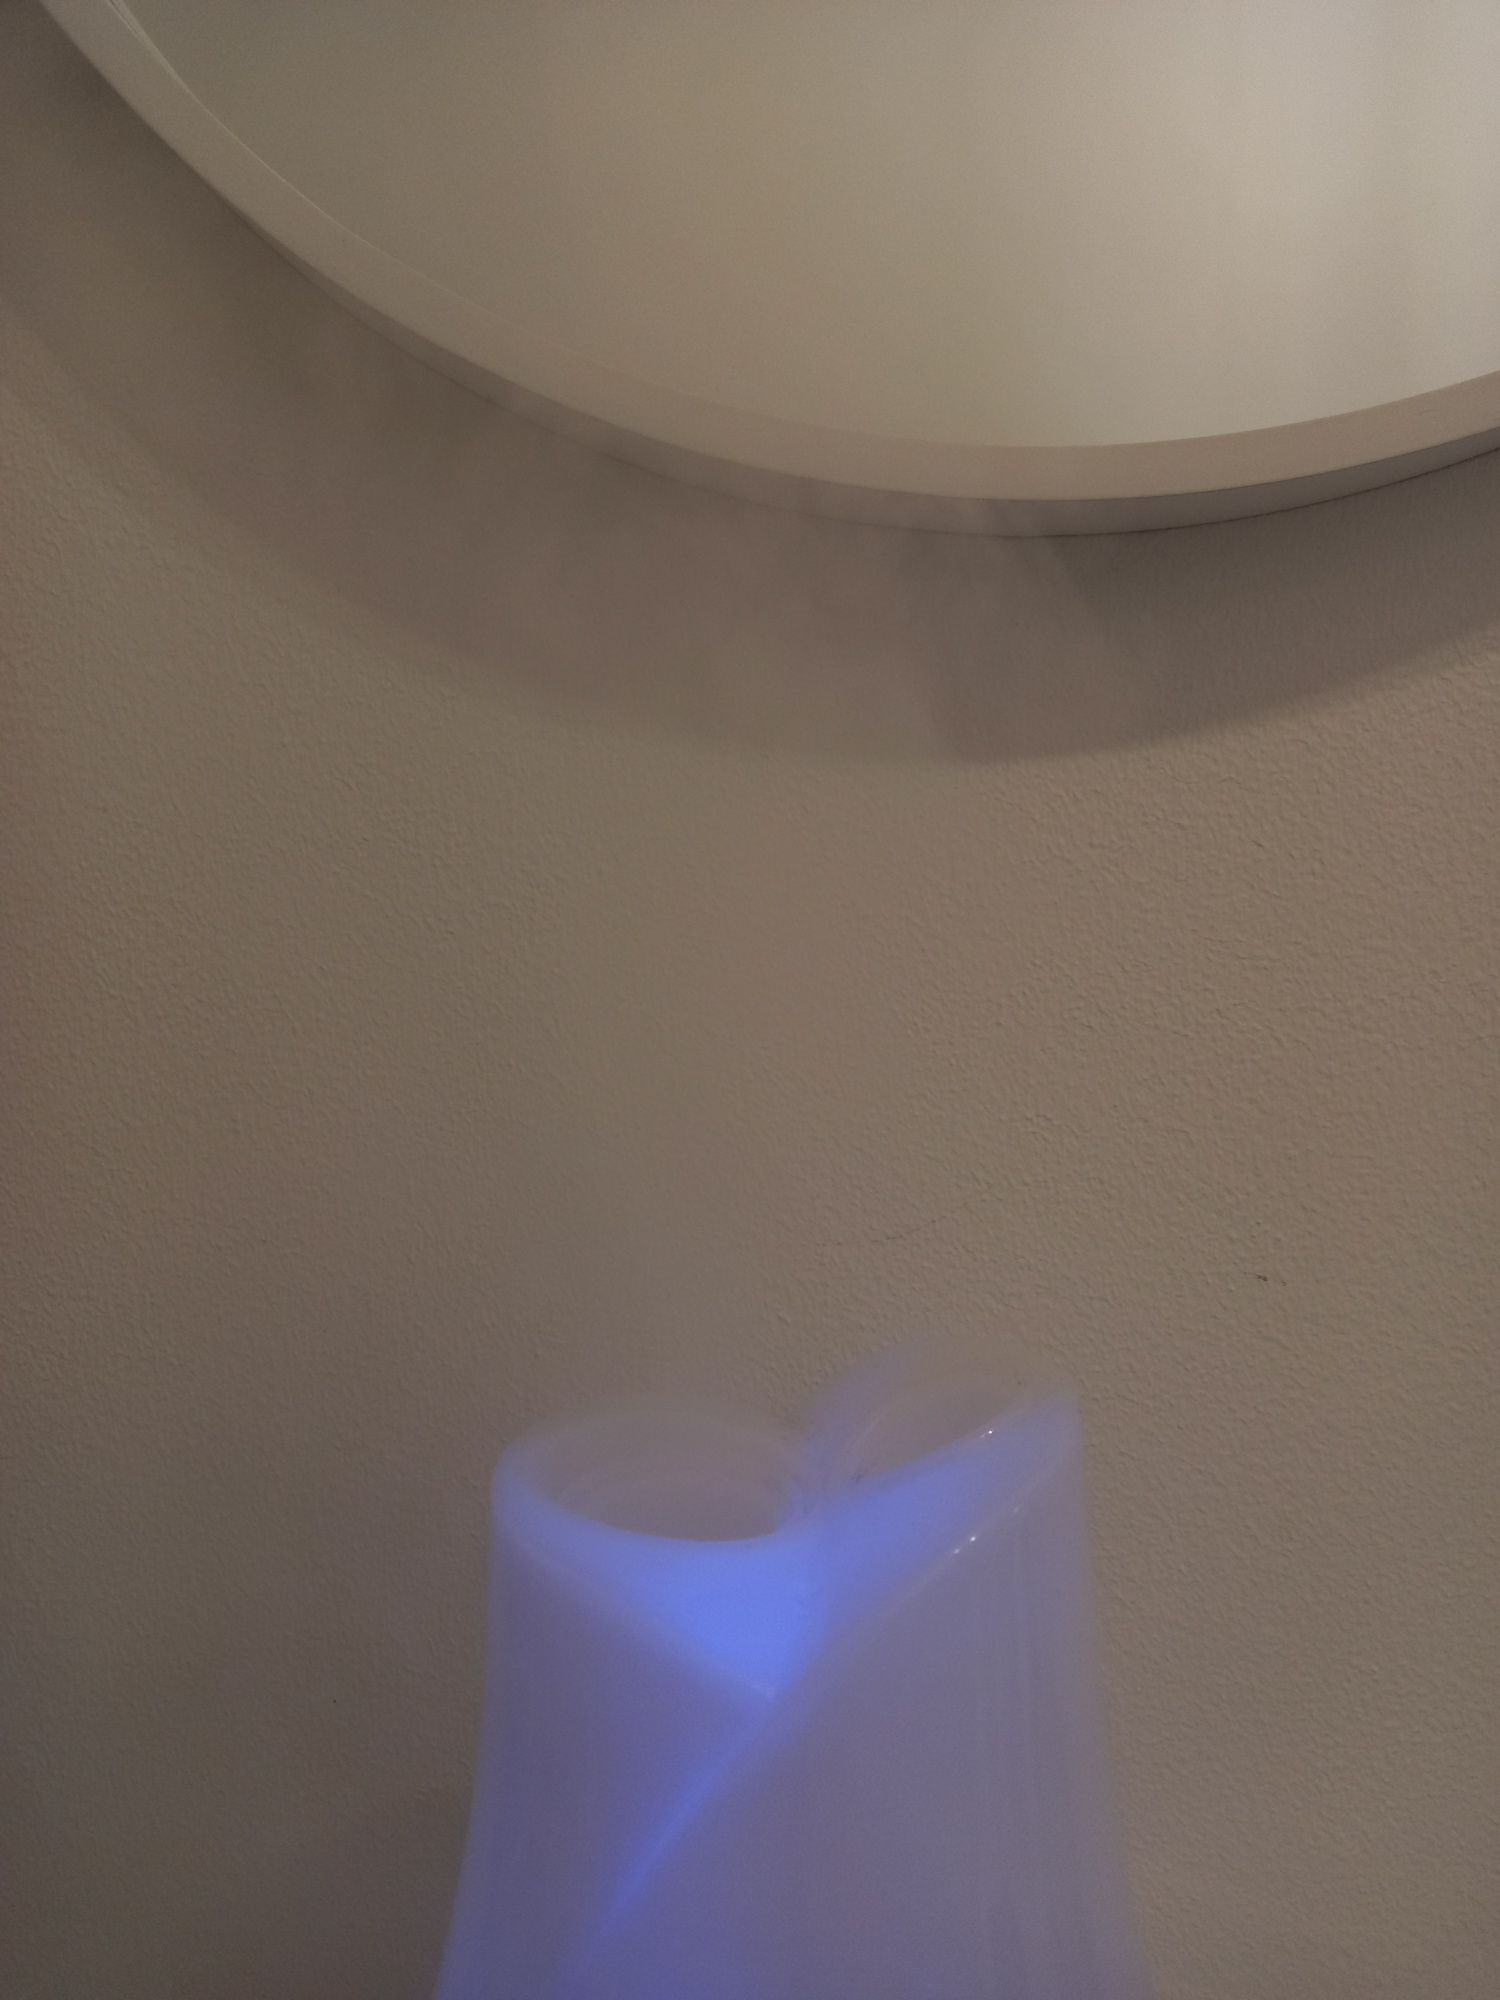 Увлажнитель воздуха WetAir с подсветкой (ночник)